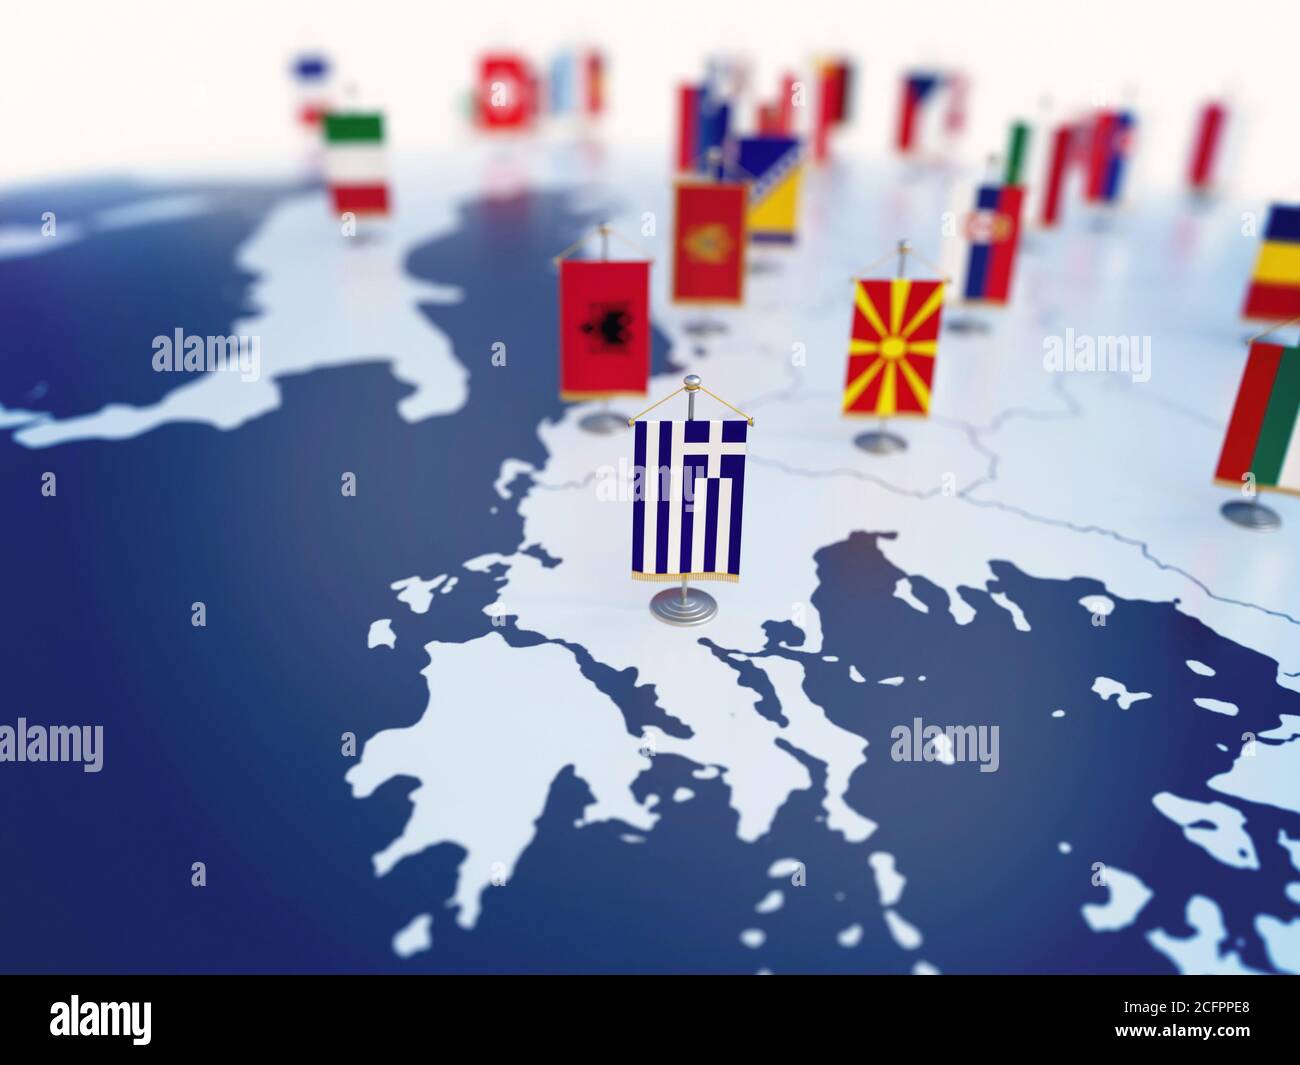 Flagge Griechenlands im Fokus unter anderen europäischen Ländern Flaggen. Europa markiert mit Tabelle Fahnen 3d-Rendering Stockfoto